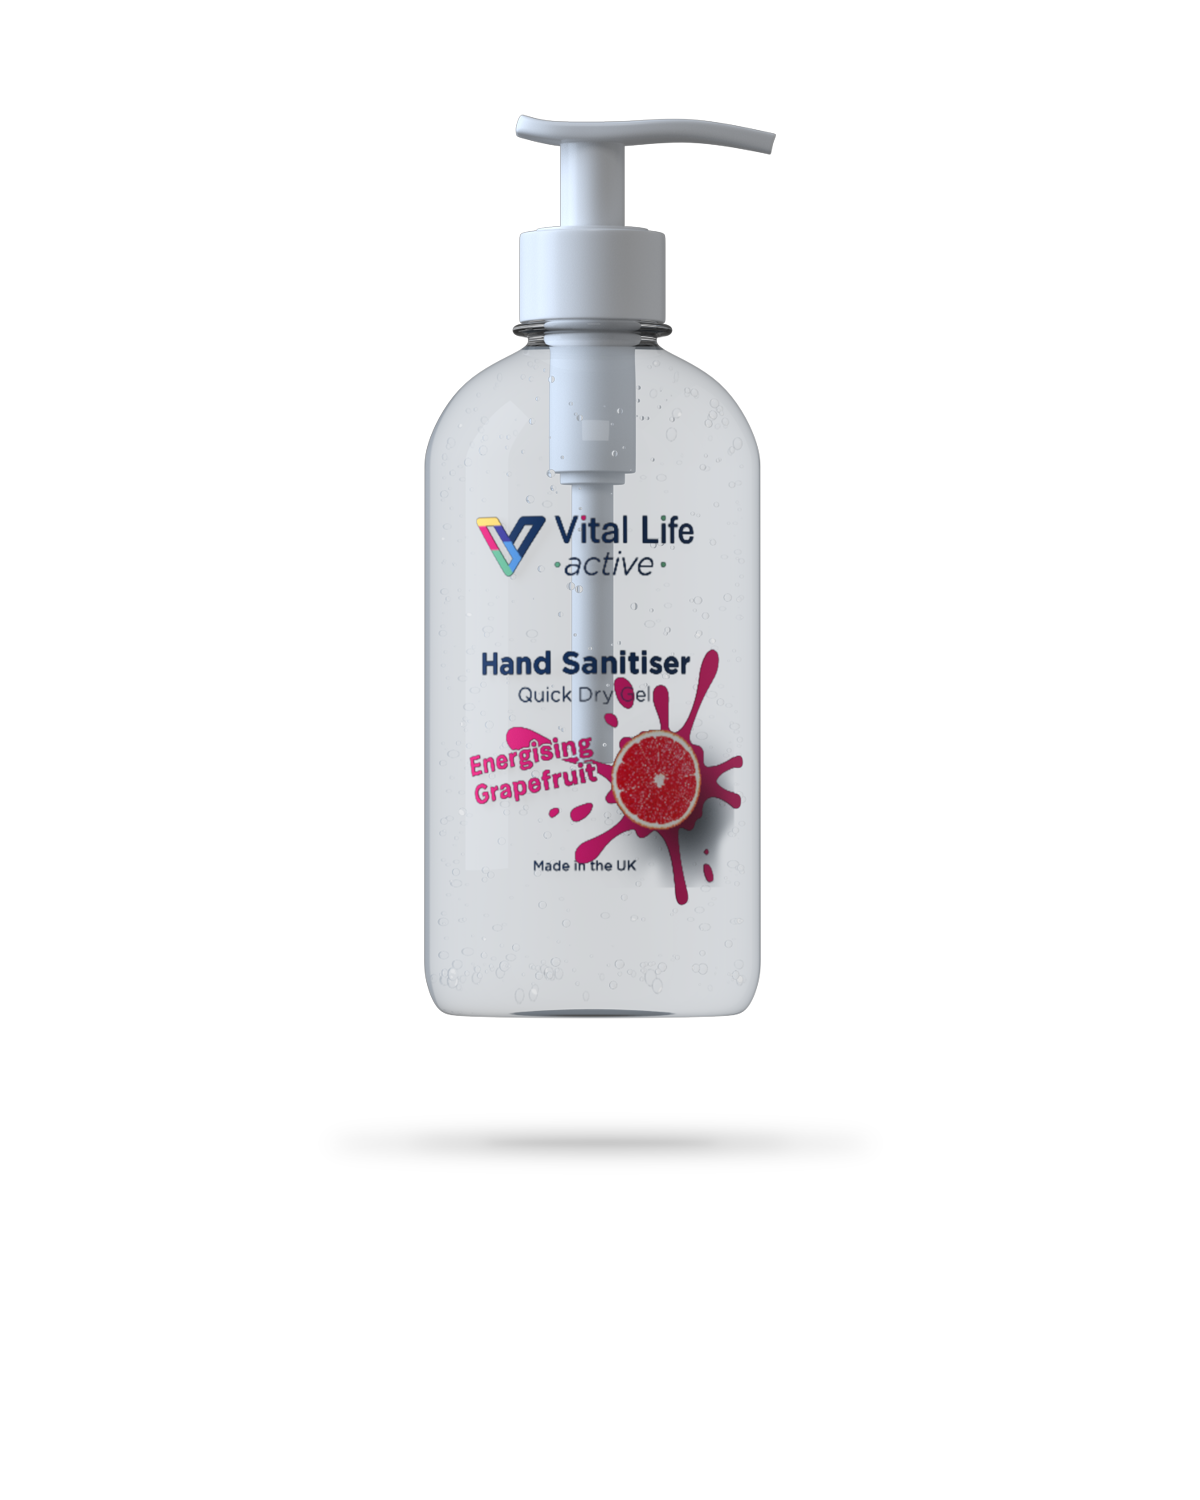 250ml Active range energising grapefruit scented hand sanitiser gel from Vital Life